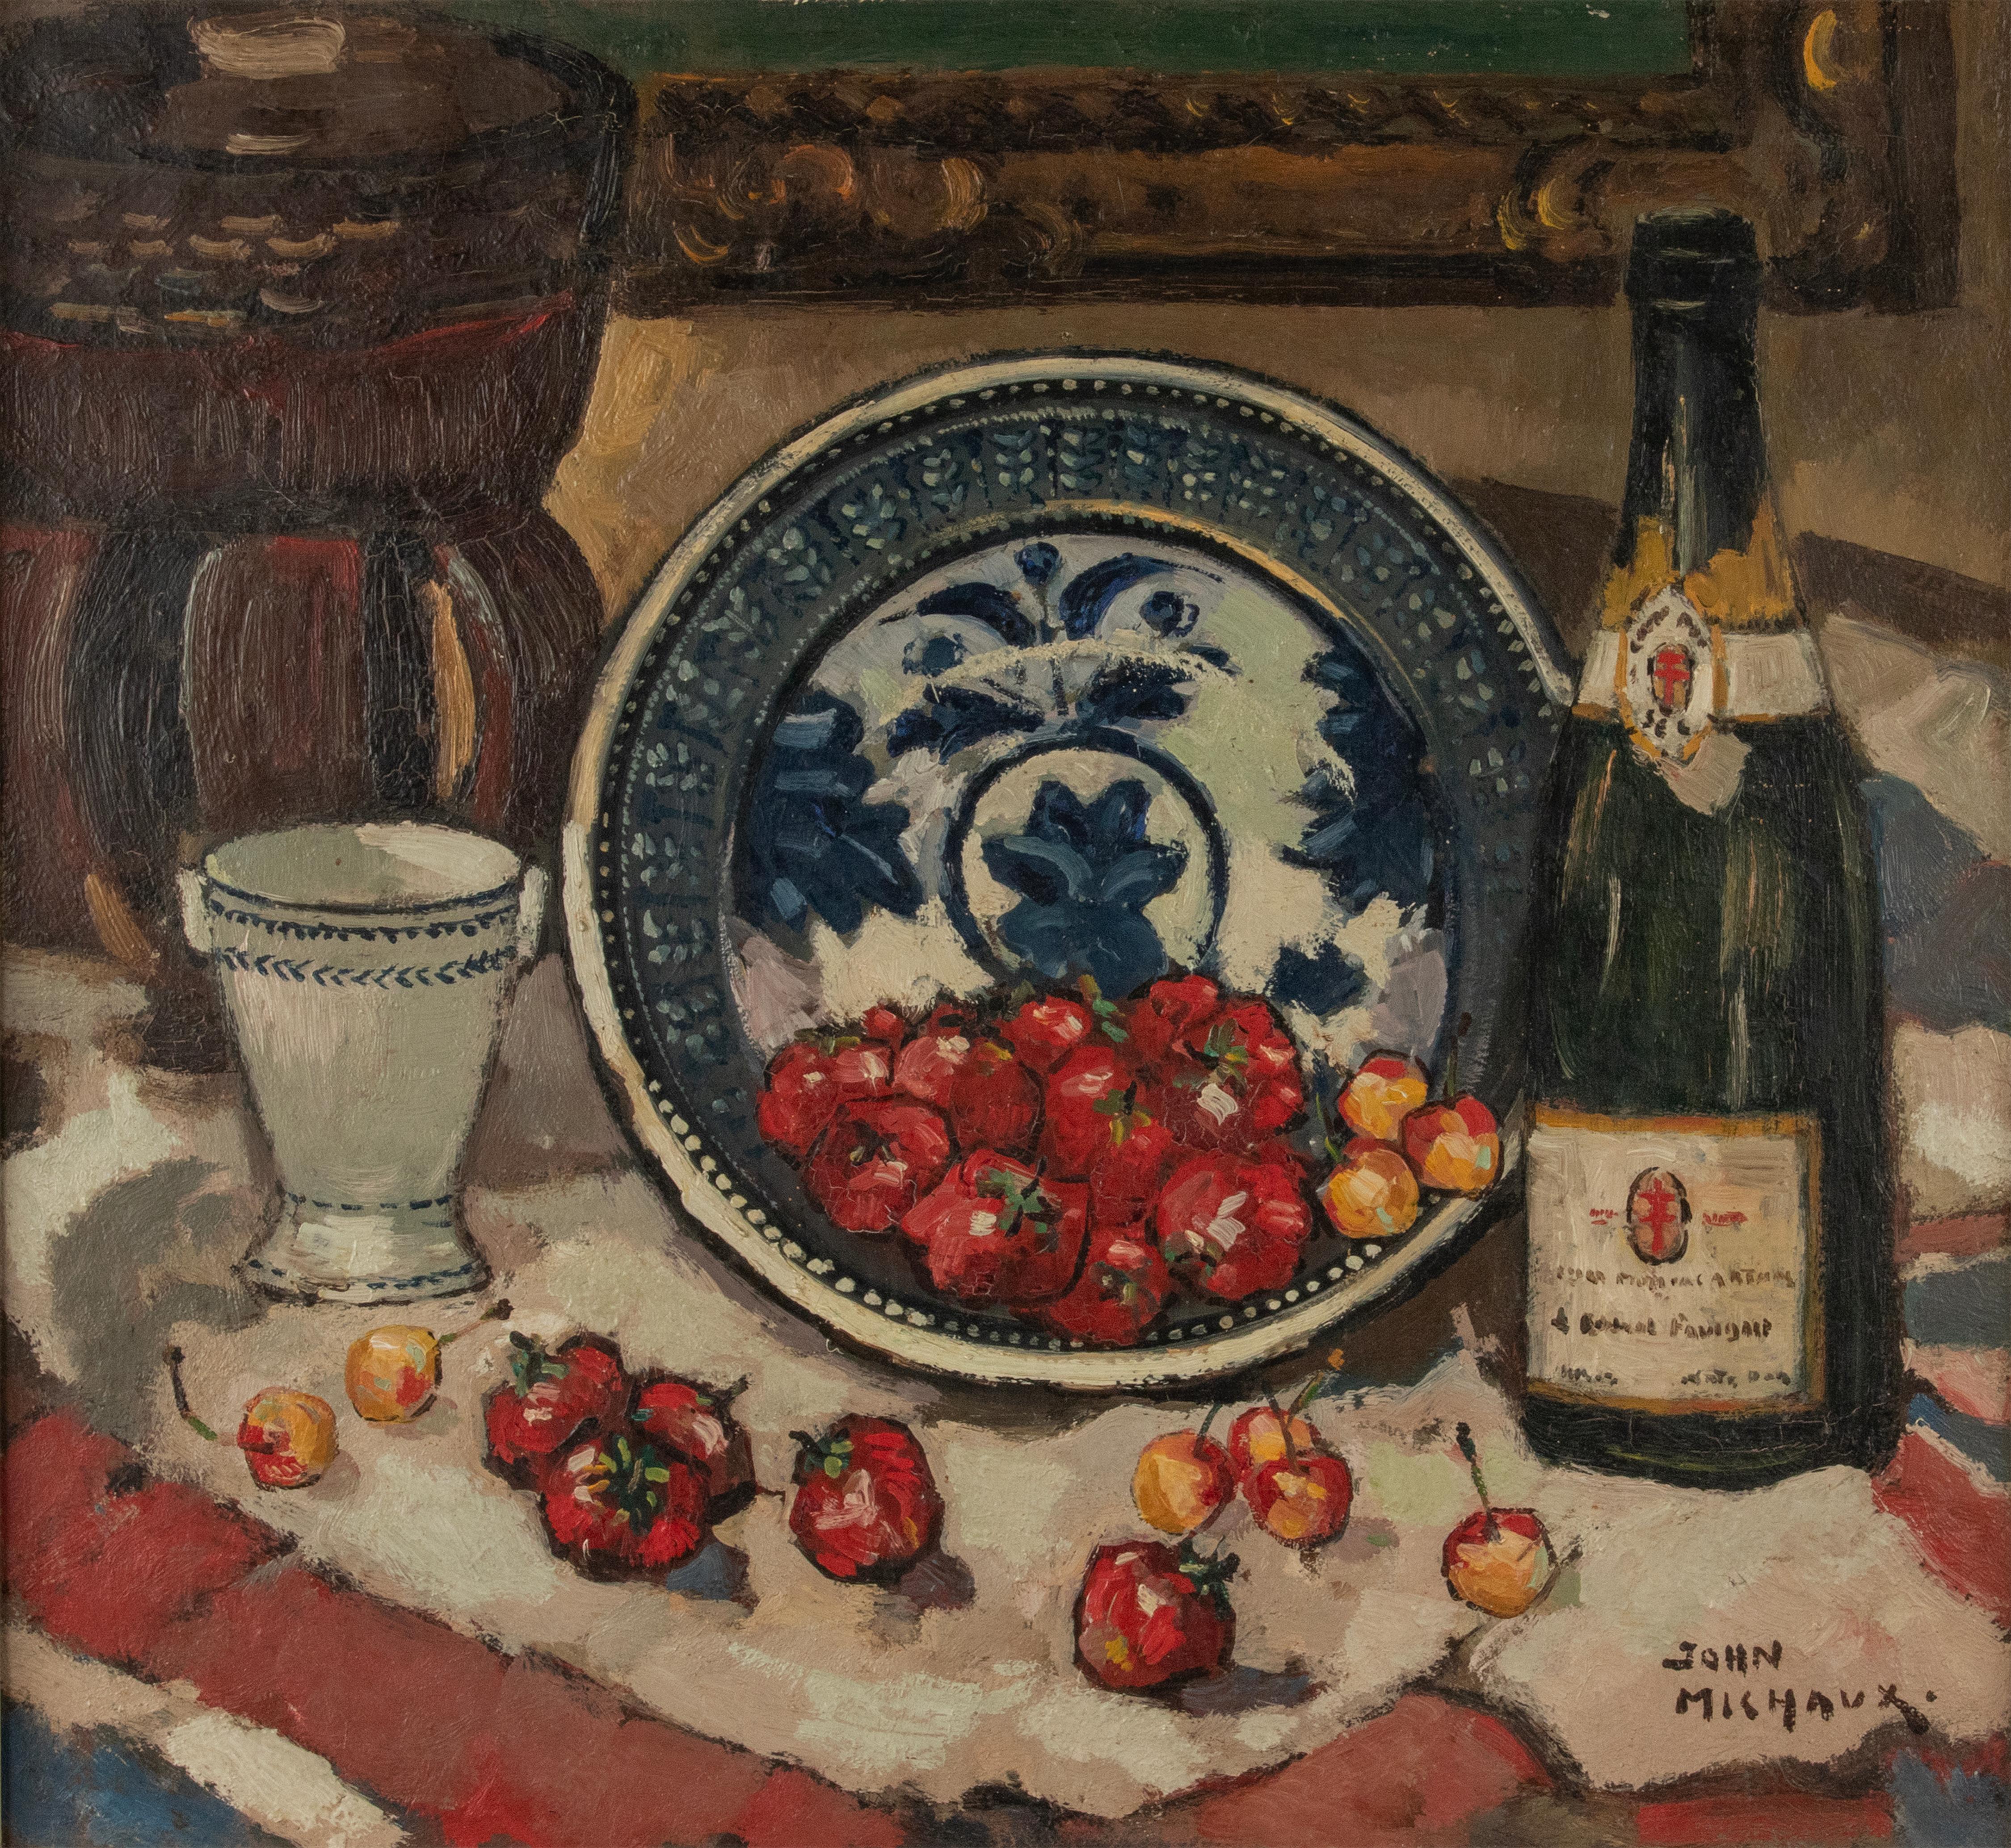 Ein wunderschönes Stillleben in Öl, gemalt von dem belgischen Künstler John Michaux. 
Es handelt sich um eine farbenfrohe Szene mit Erdbeeren und Kirschen in einer blau-weißen Keramikschale und einer Sektflasche vor dem Hintergrund eines